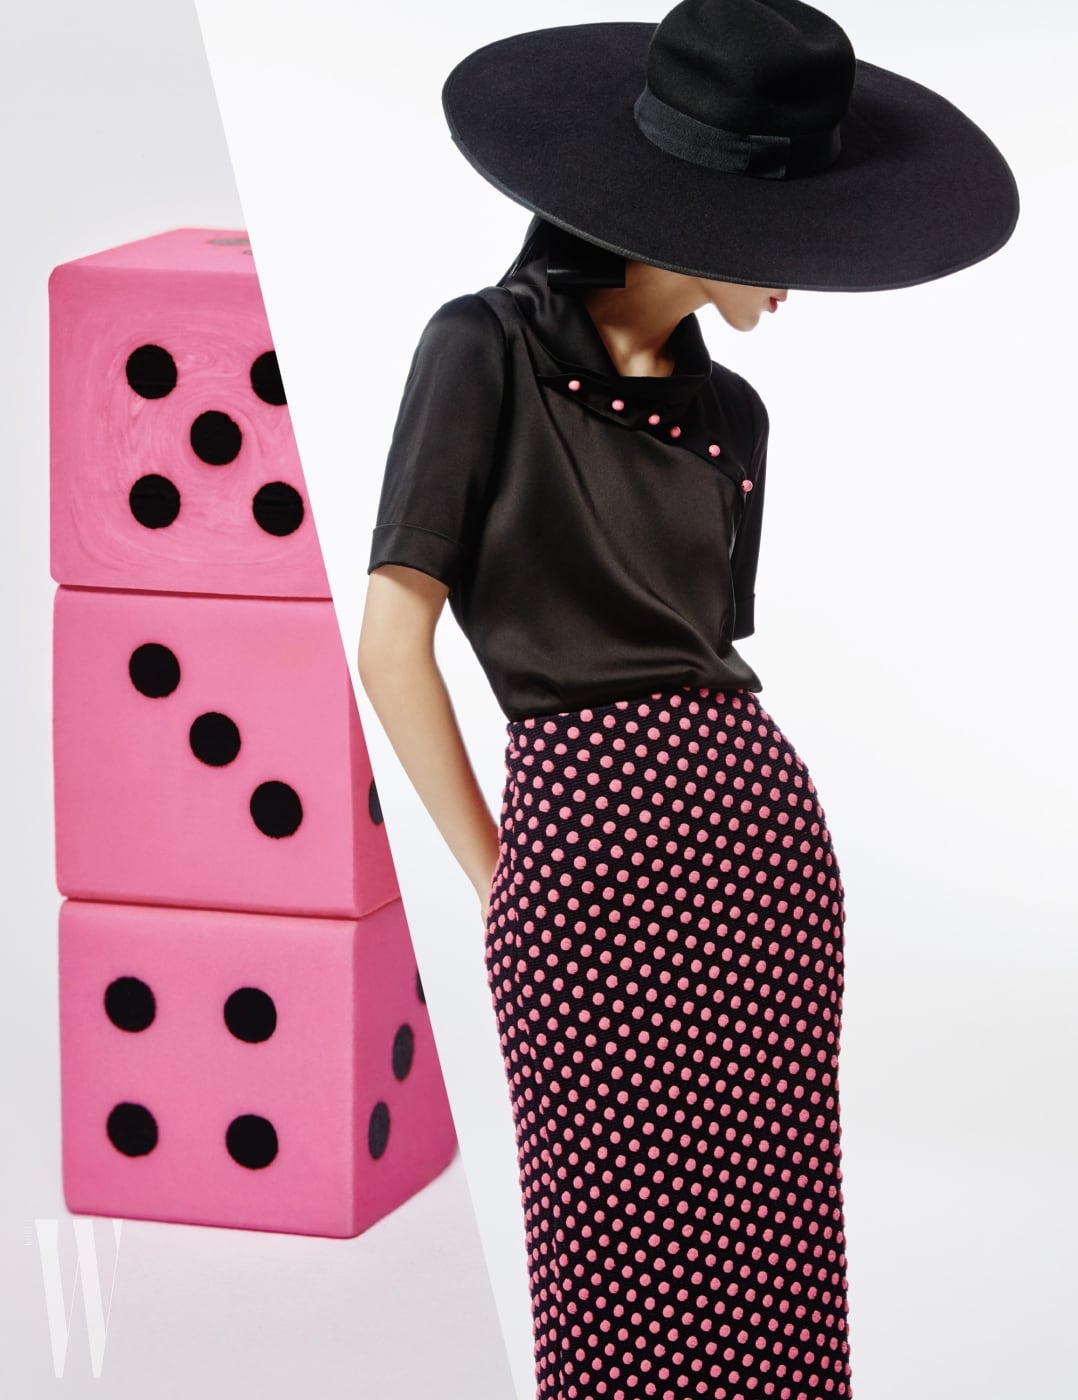 핑크색 단추가 장식된 실크 블라우스, 입체적인 느낌의 도트무늬 펜슬 스커트, 큼직한 모자는 모두 Emporio Armani 제품.